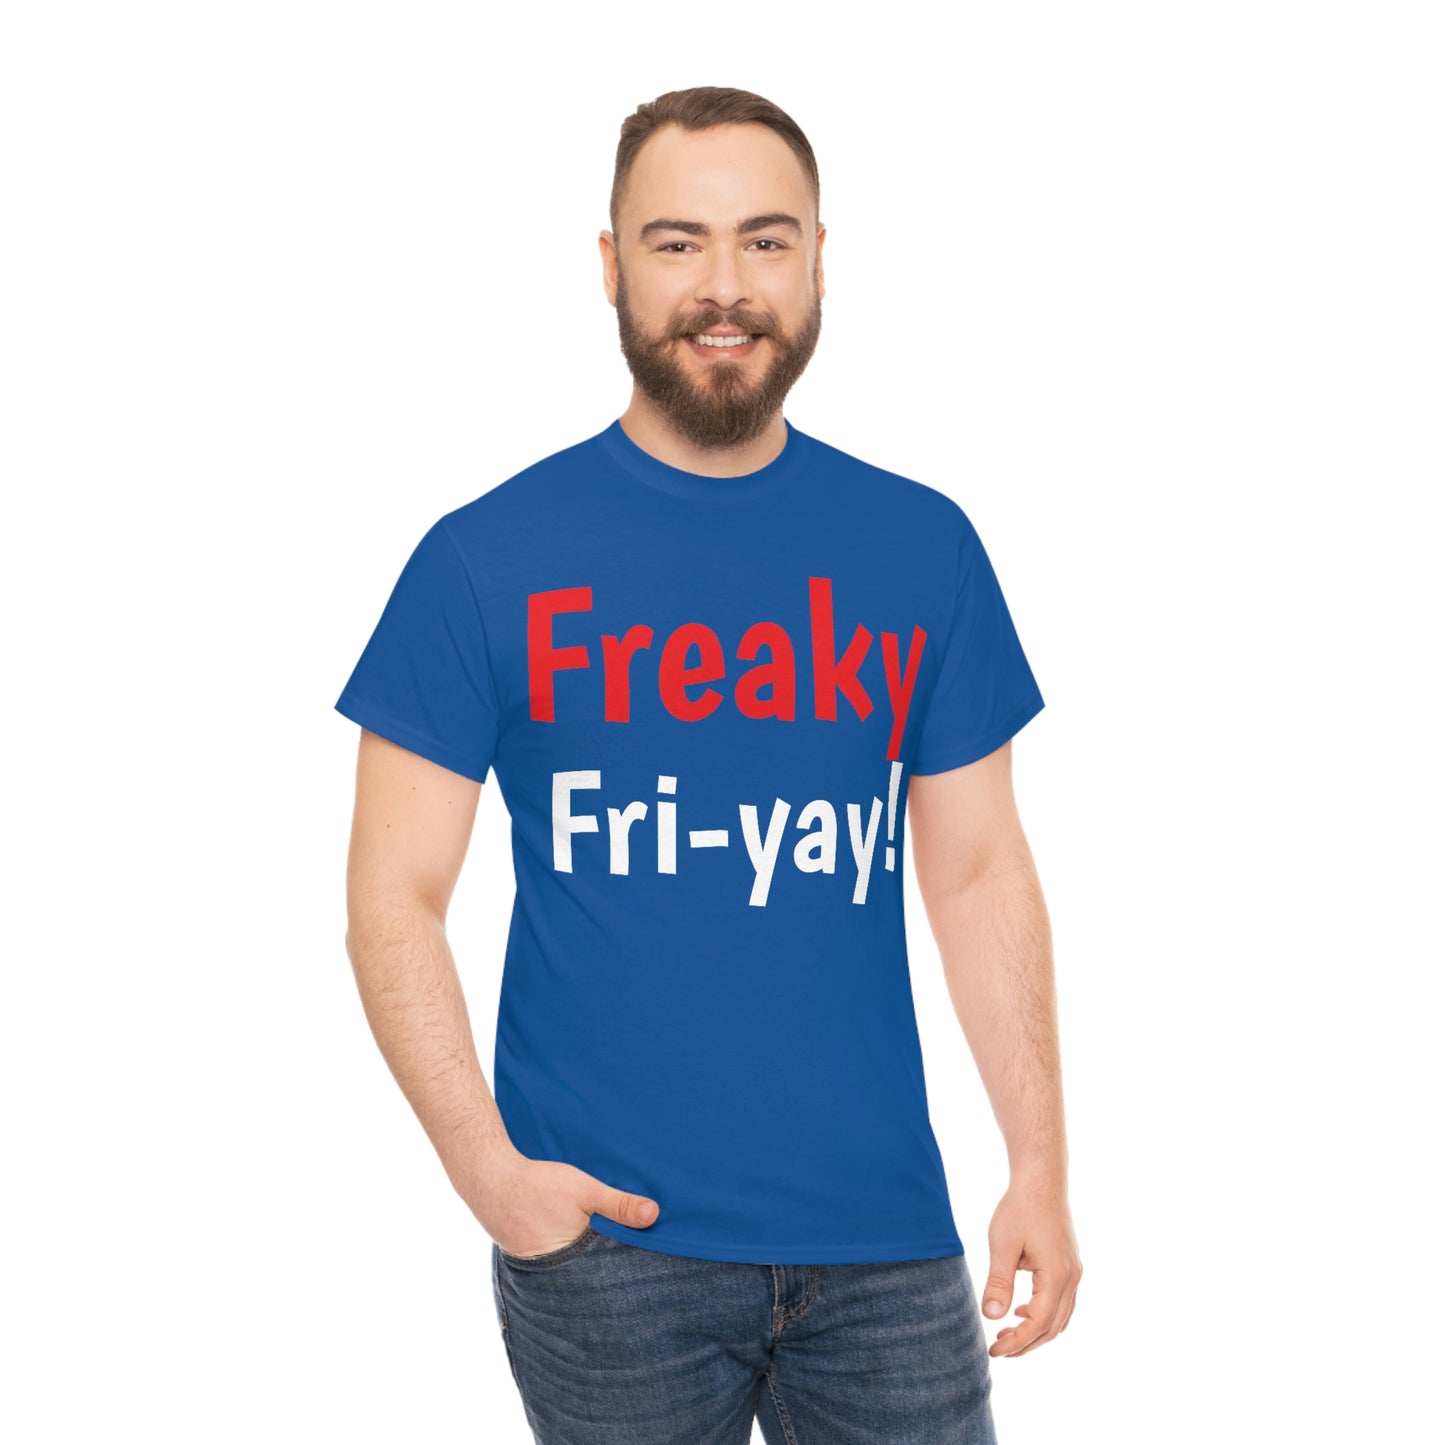 Freaky Fri-Yay!